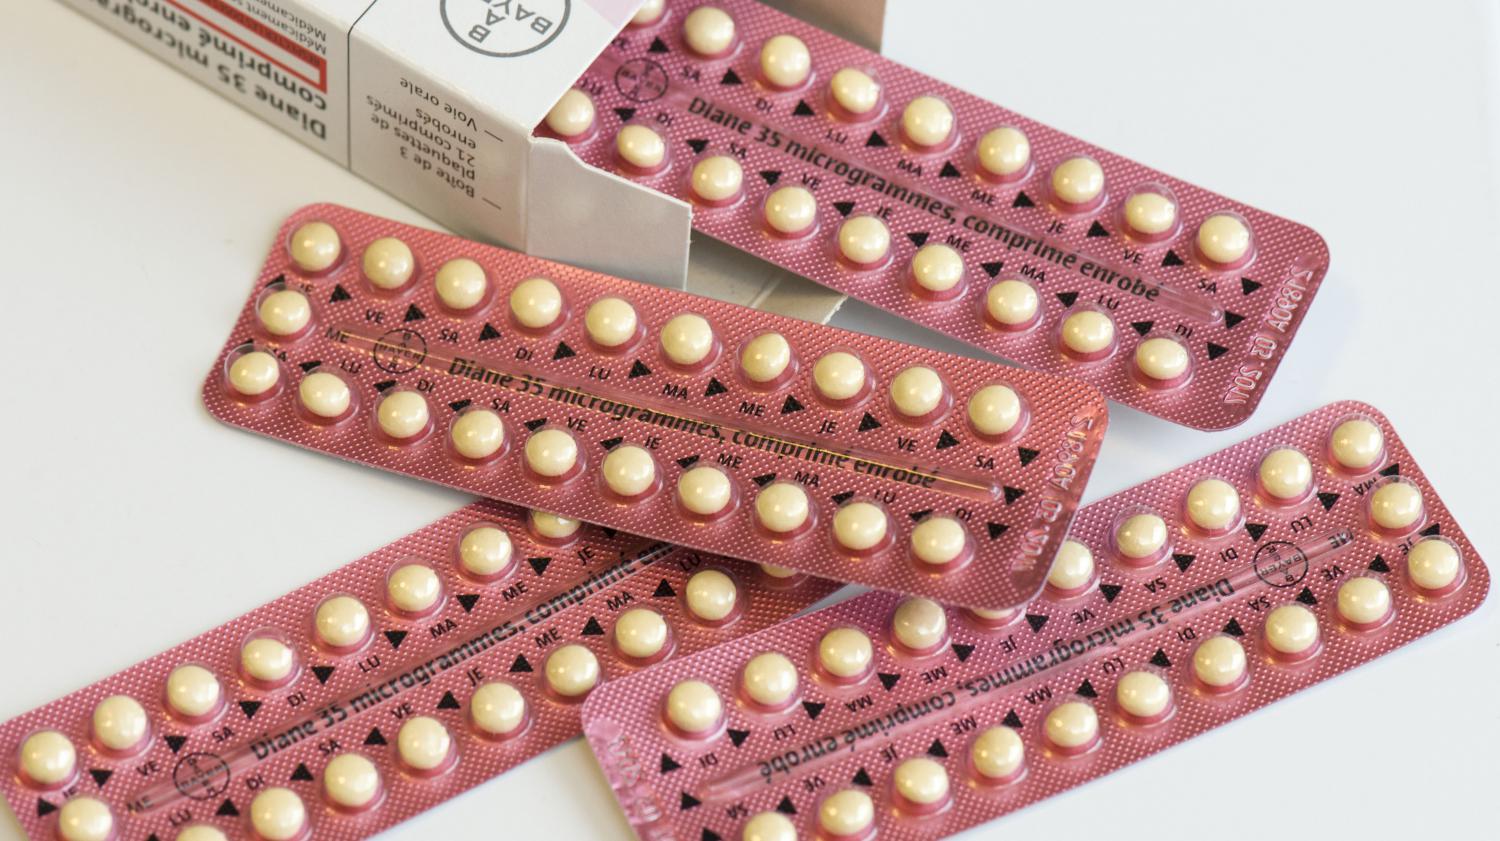 Les conditions à savoir pour l’utilisation des pilules contraceptives